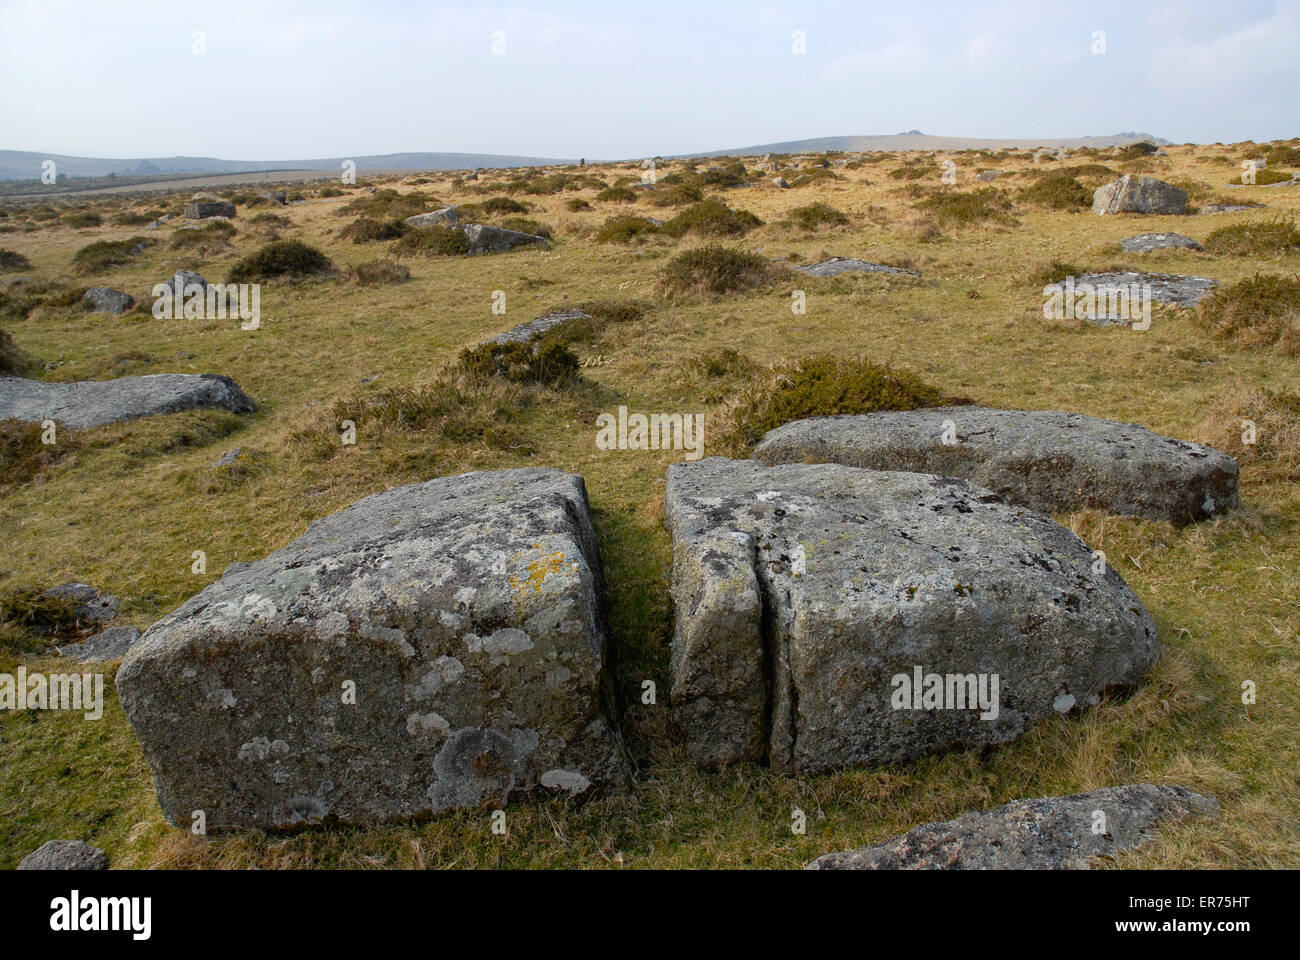 Granito erosionado en un paisaje vacío, el parque nacional de Dartmoor, Devon, Inglaterra Foto de stock